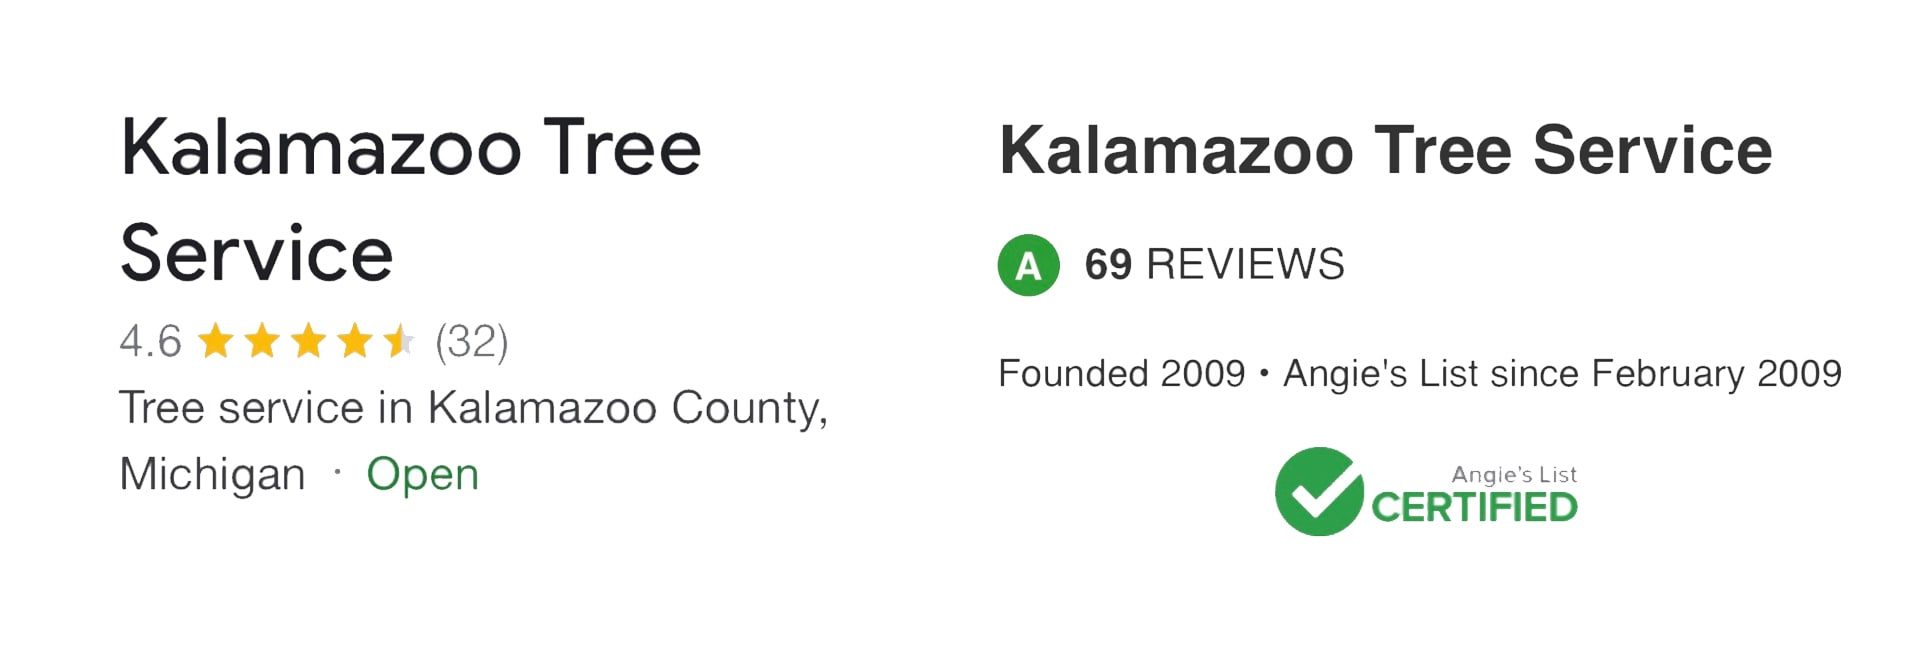 About Kalamazoo Tree Service